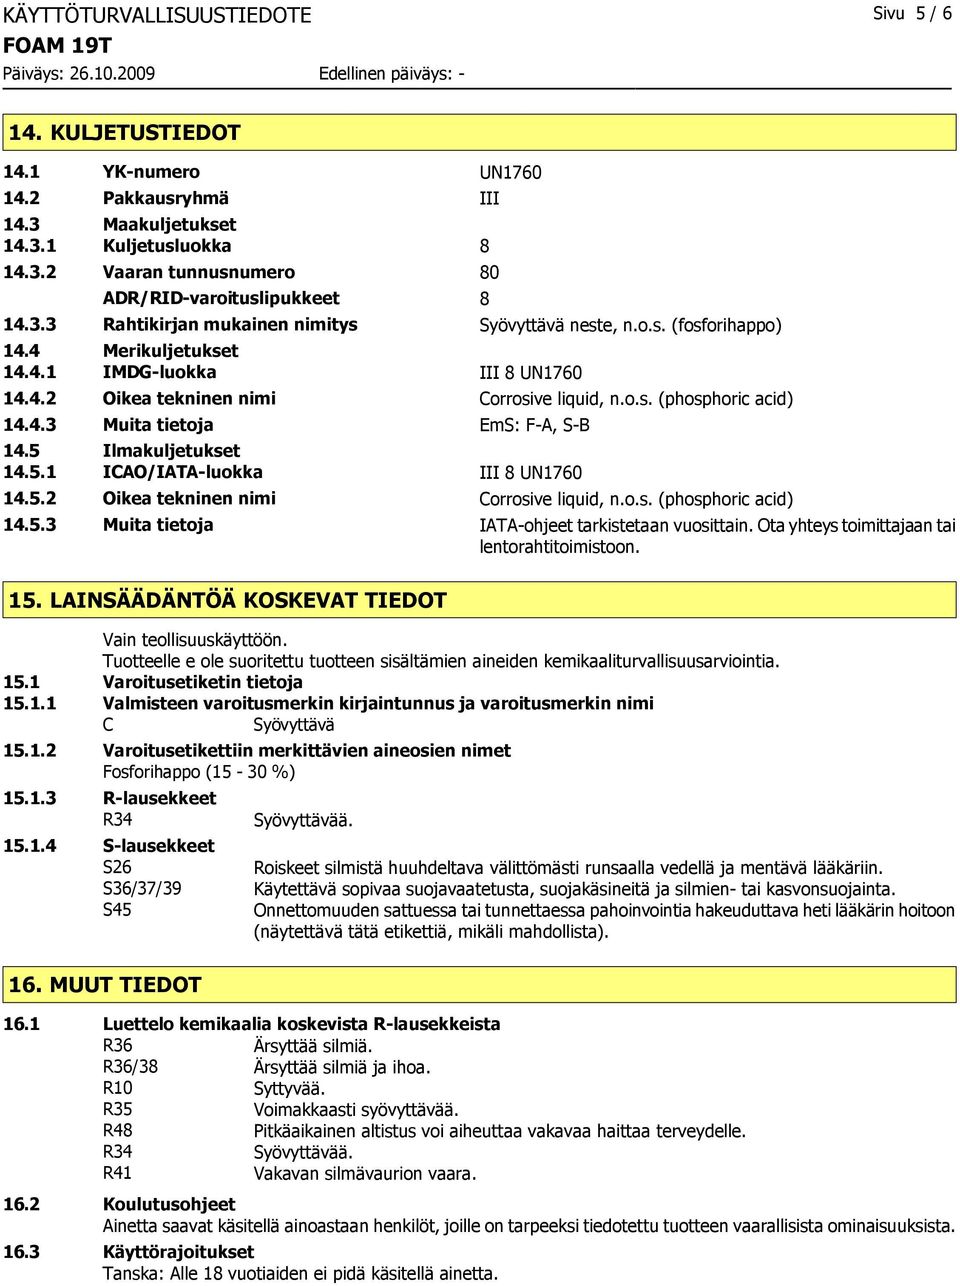 4.3 Muita tietoja EmS: F-A, S-B 14.5 Ilmakuljetukset 14.5.1 ICAO/IATA-luokka III 8 UN1760 14.5.2 Oikea tekninen nimi Corrosive liquid, n.o.s. (phosphoric acid) 14.5.3 Muita tietoja IATA-ohjeet tarkistetaan vuosittain.